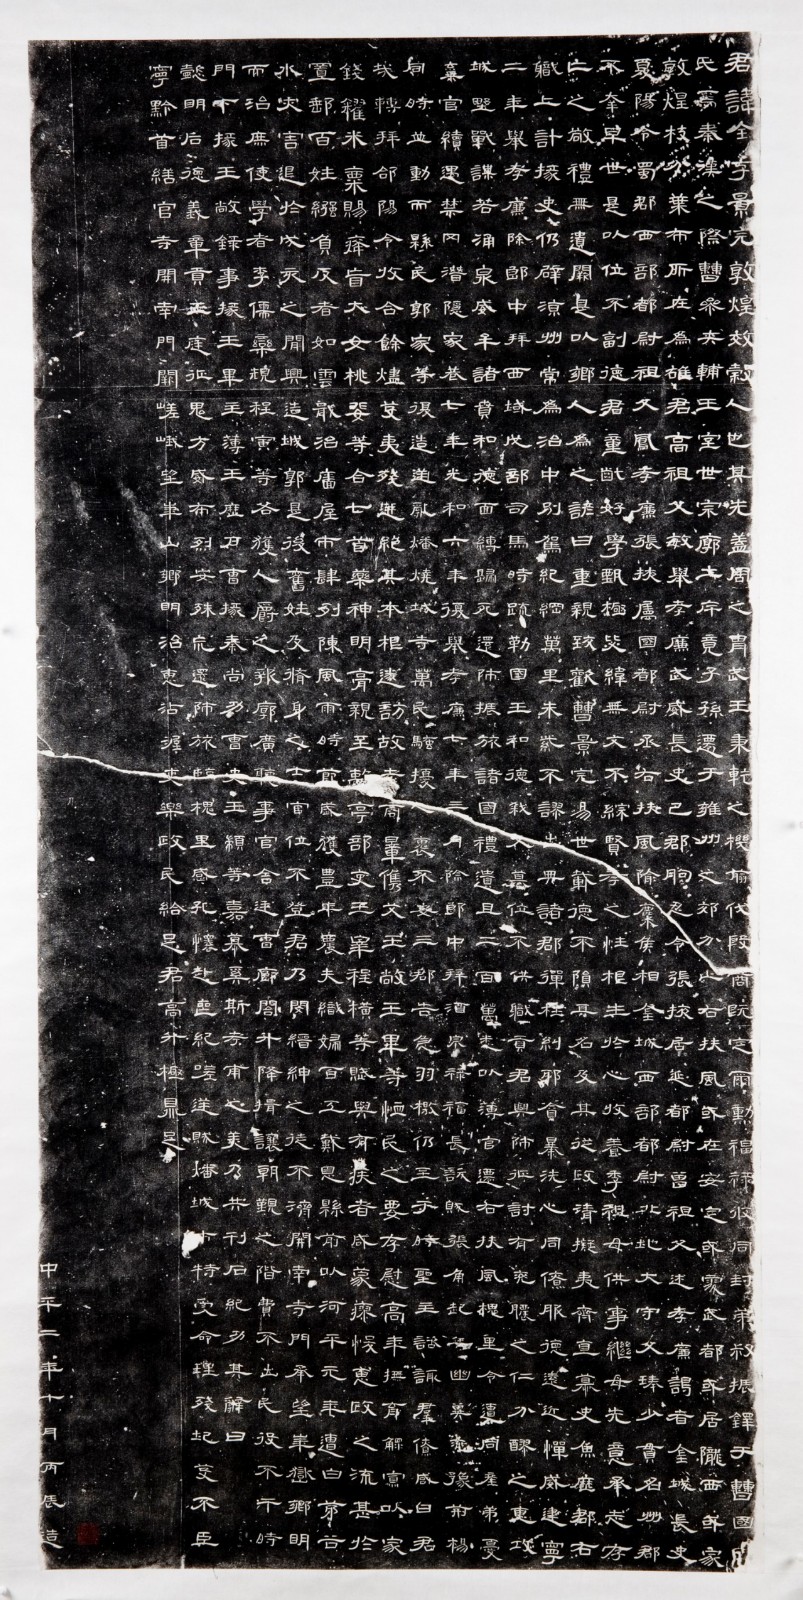 《曹全碑》拓片是中国汉碑隶书中的代表作拓本, 碑文主要记述了曹全的